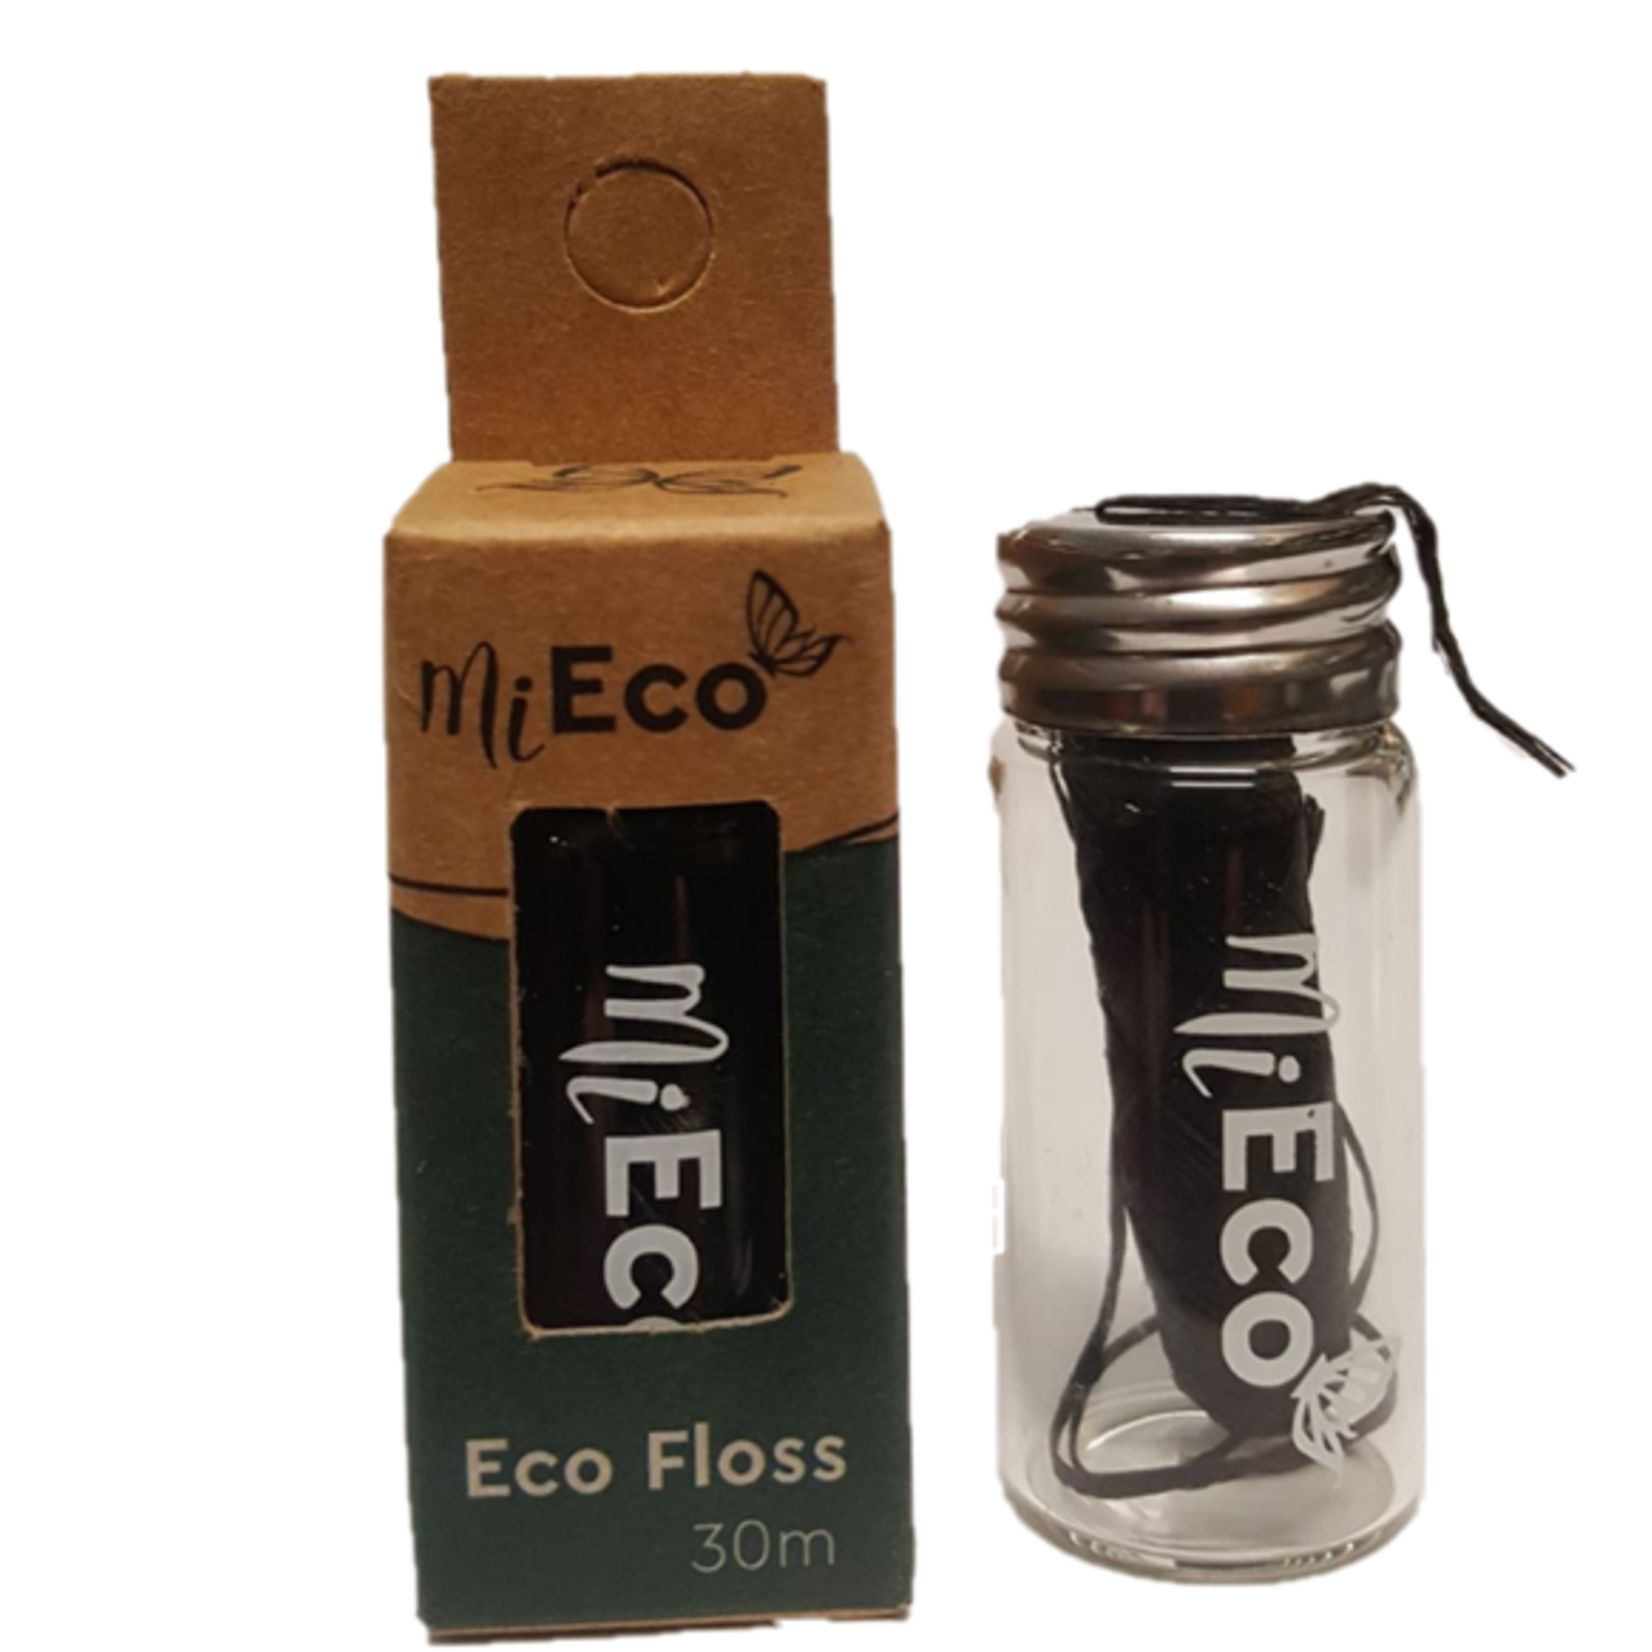 Mieco Mieco Eco Floss Activated Charcoal